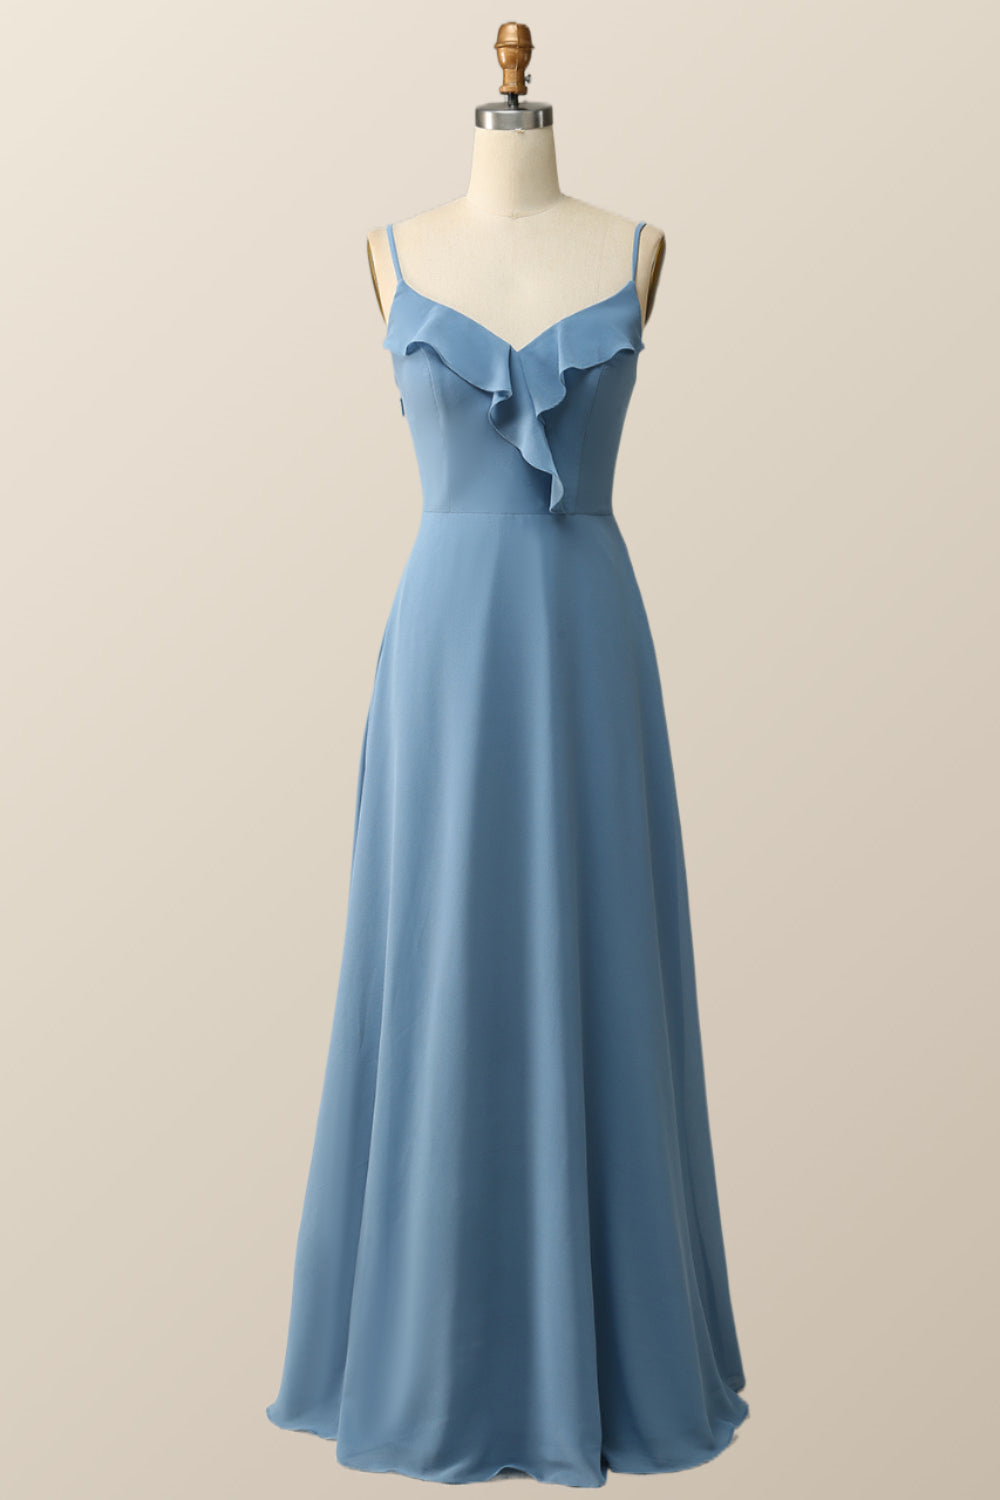 Blue Straps Ruffle Chiffon Long Bridesmaid Dress